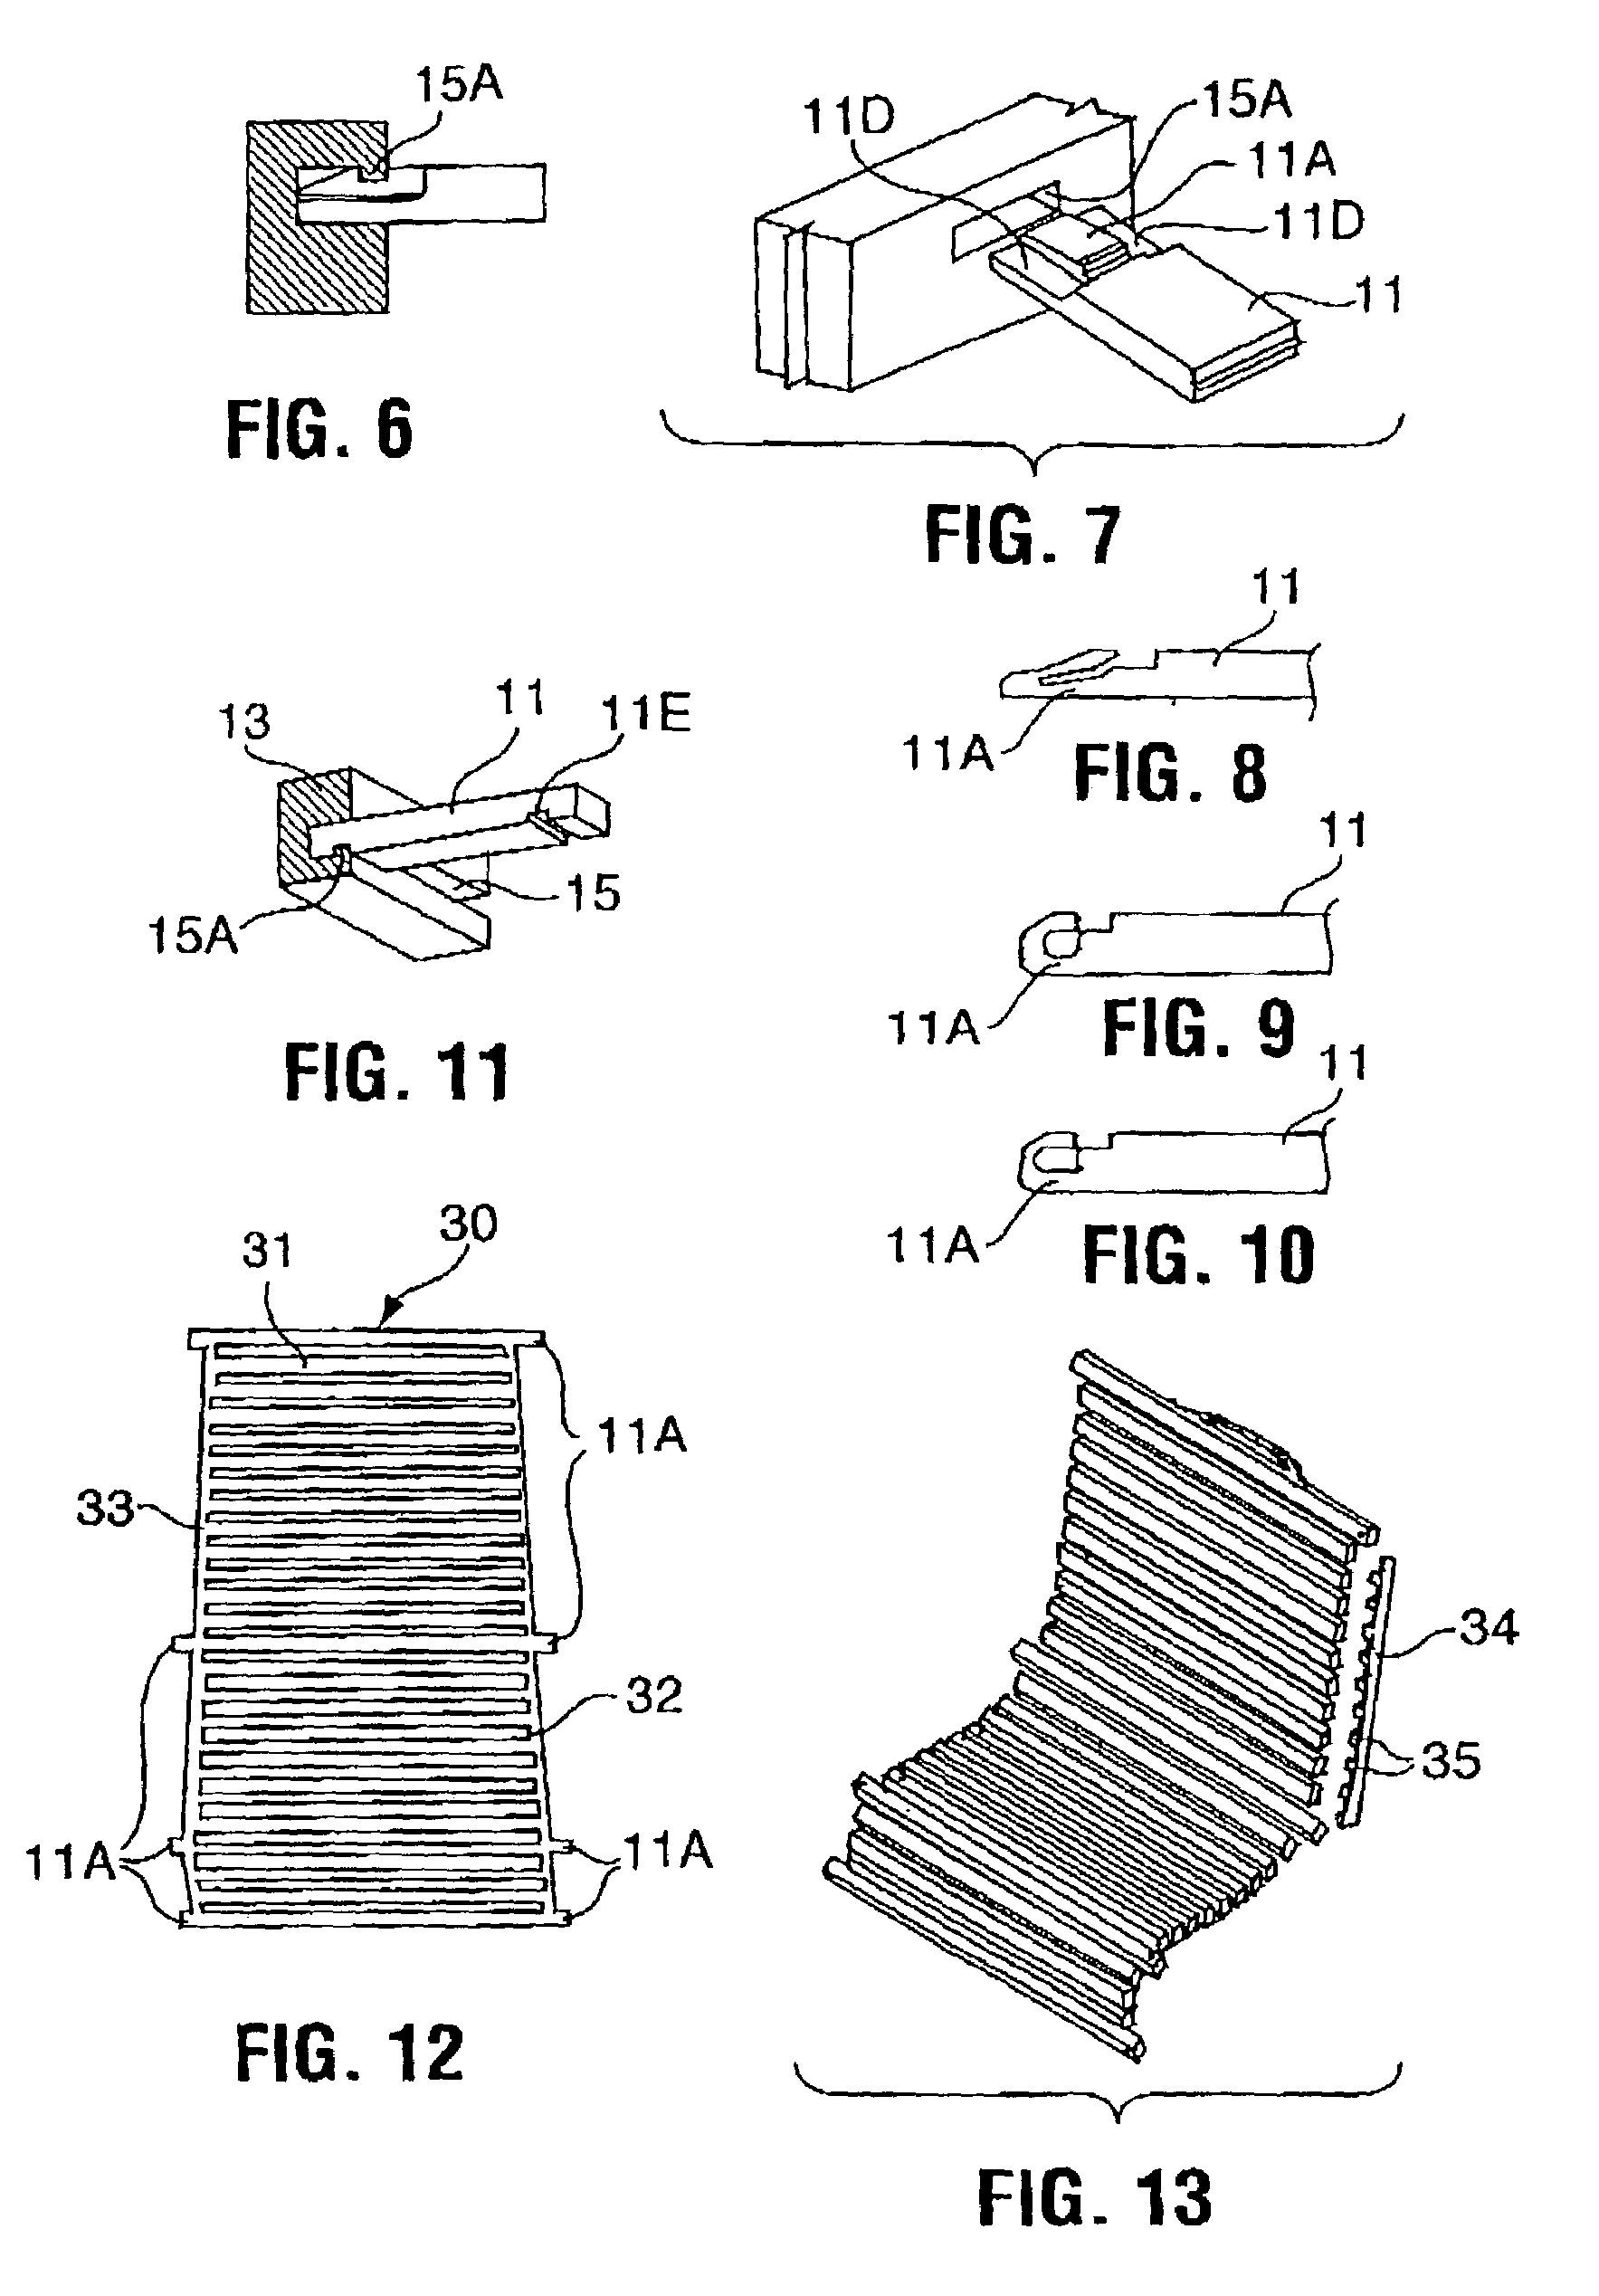 Furniture structure